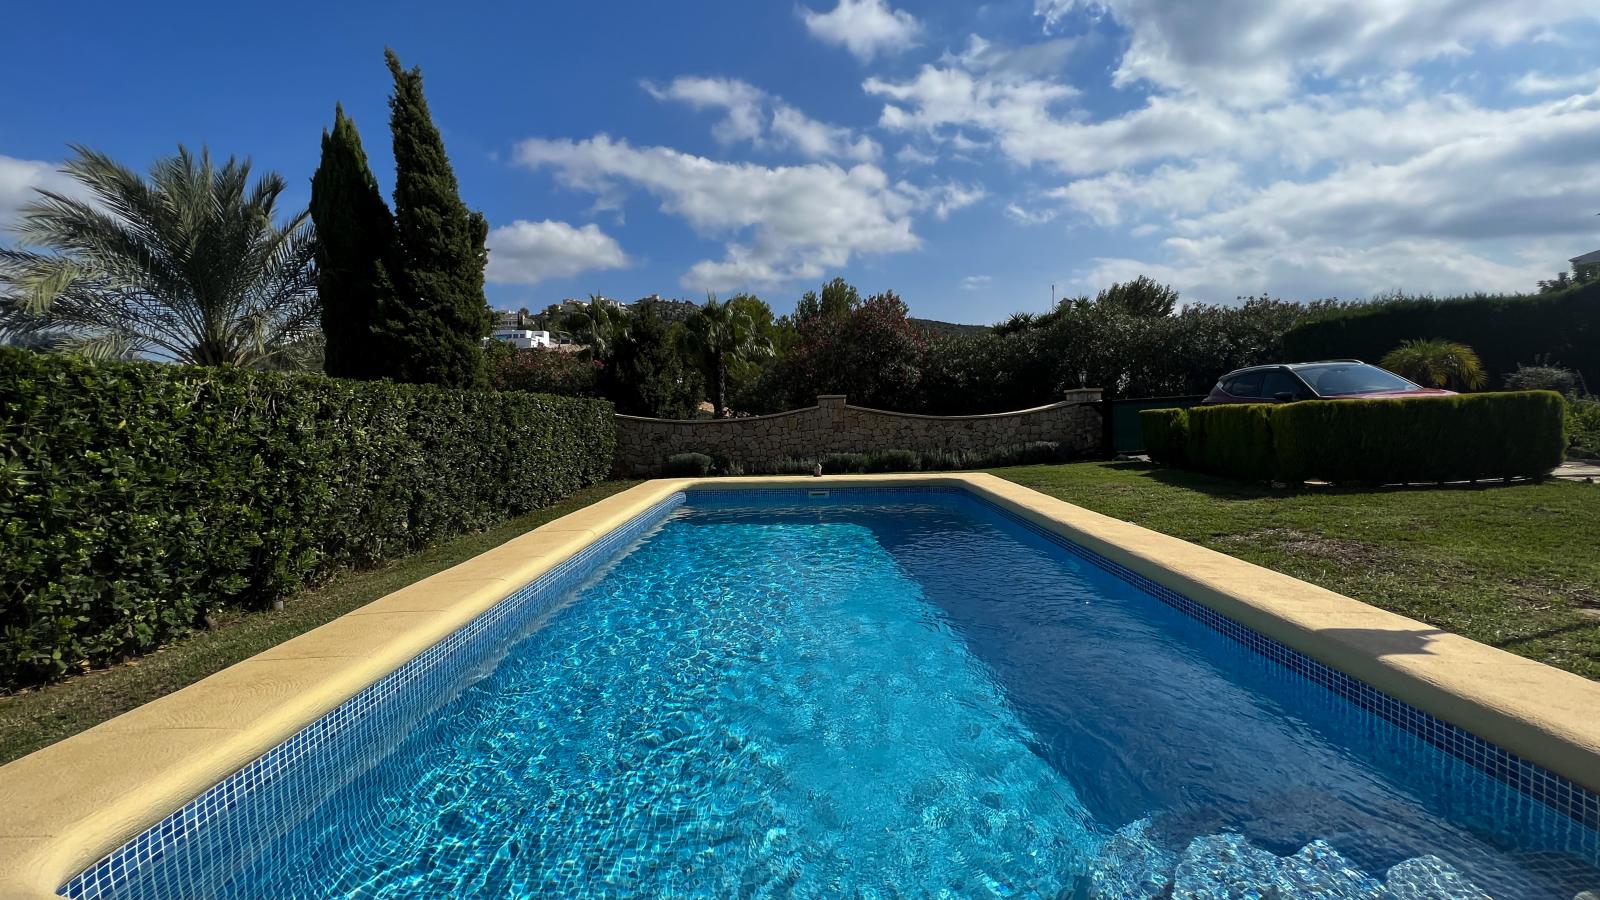 Gran chalet familiar mediterráneo con piscina y 3 dormitorios, en una tranquila zona residencial de Rafol de Almunia.